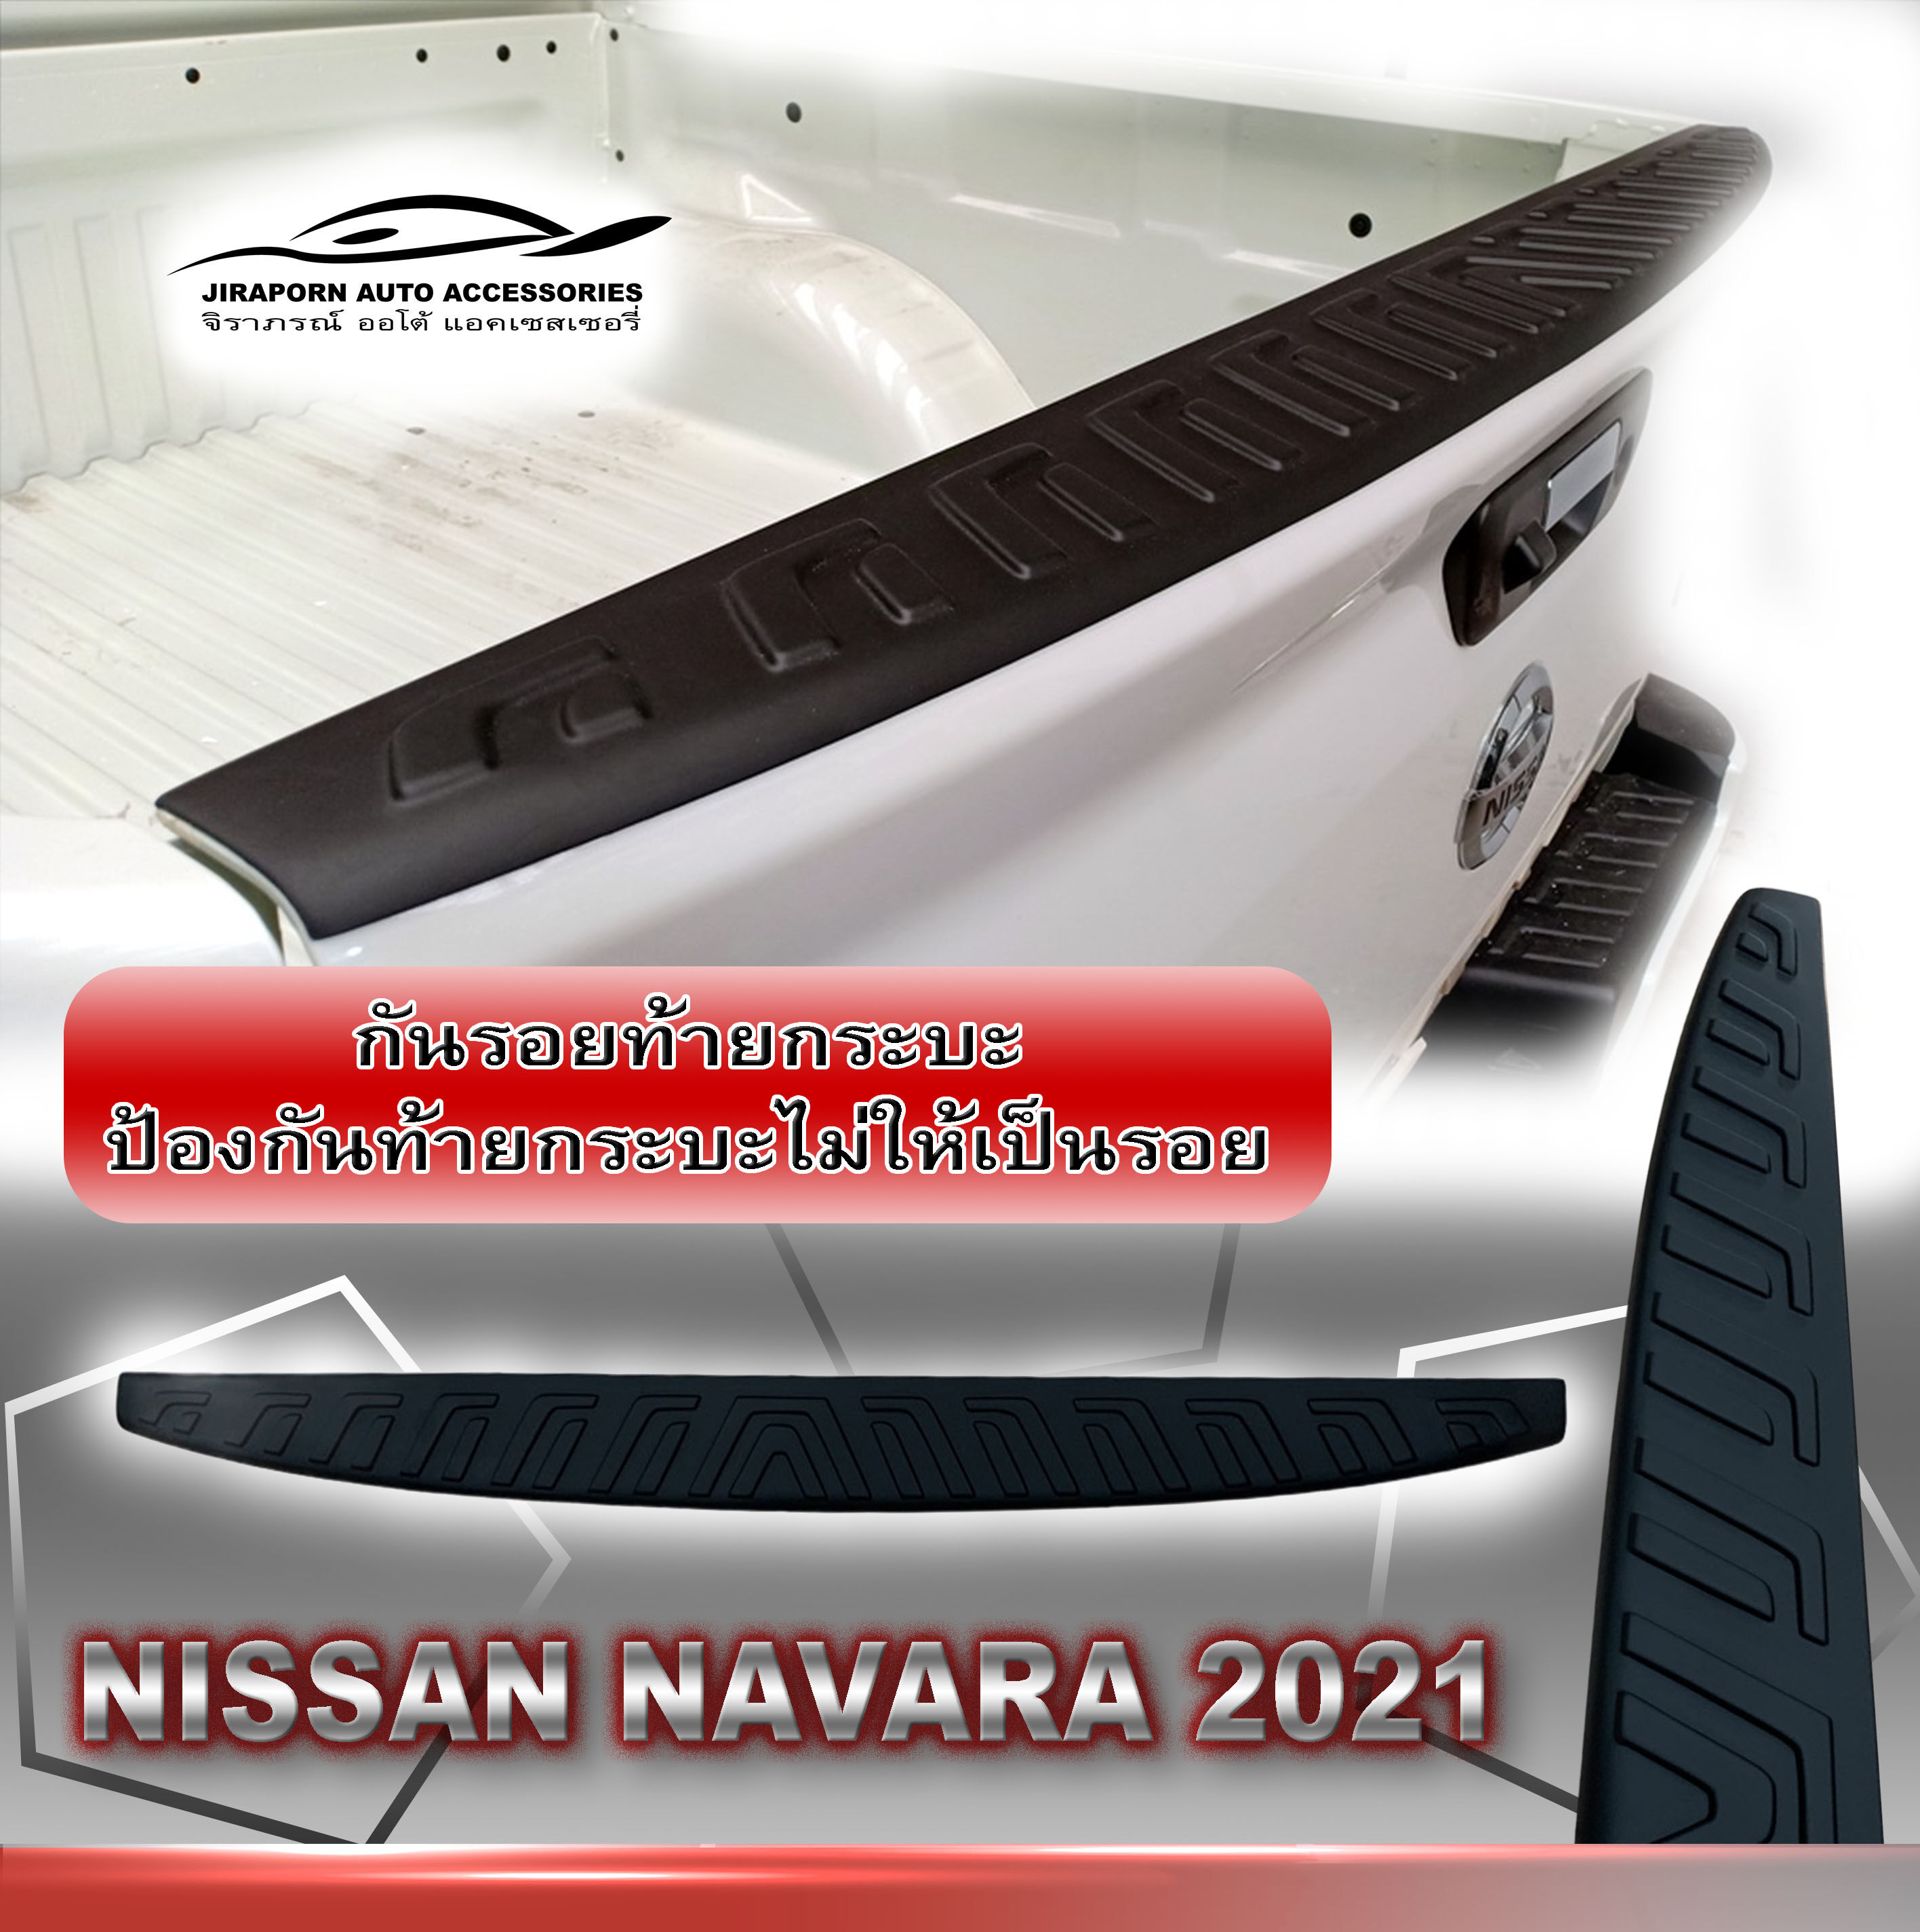 กันรอยท้ายกระบะ  NISSAN NAVARA 2021 รุ่นCALIBREยกสูงขึ้นไปใส่ได้หมด ถ้าเป็นรุ่น Cab ตัวเตี้ยจะใส่ไม่ได้